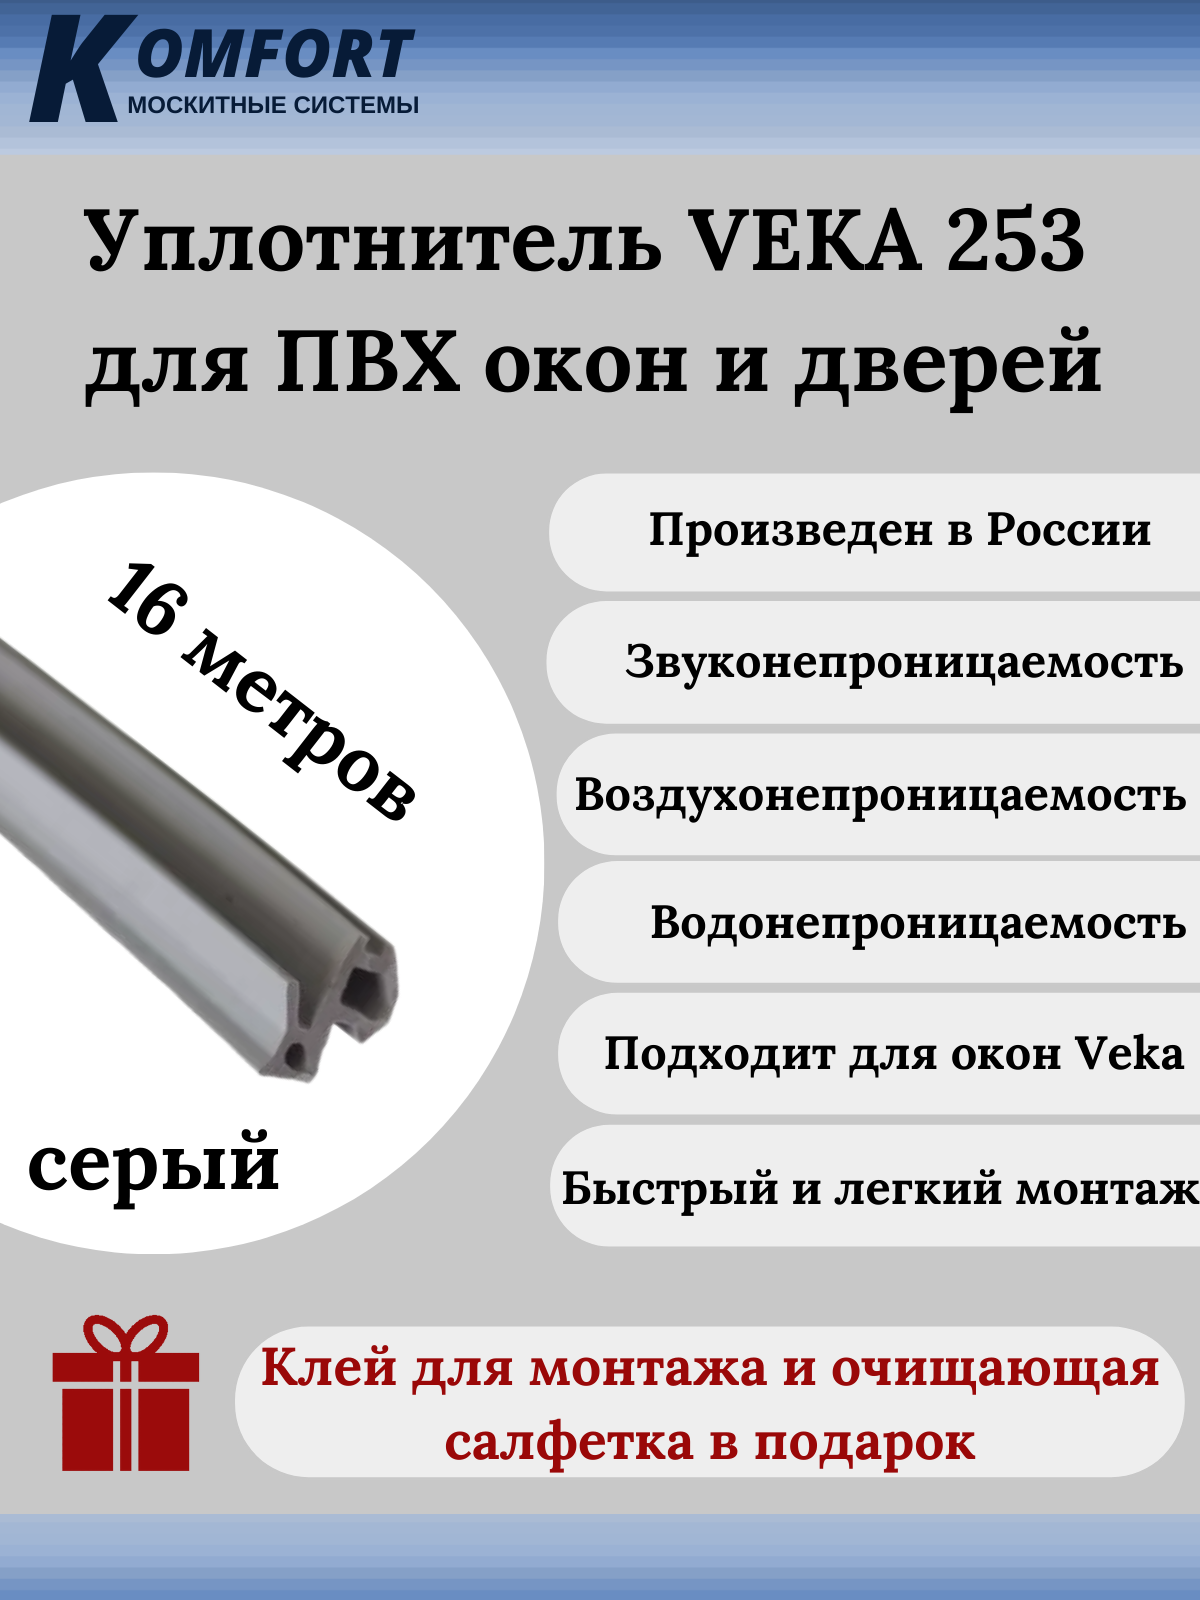 Уплотнитель VEKA 253 для окон и дверей ПВХ усиленный серый ТЭП 16м уплотнитель для окон и дверей пвх veka komfort москитные системы